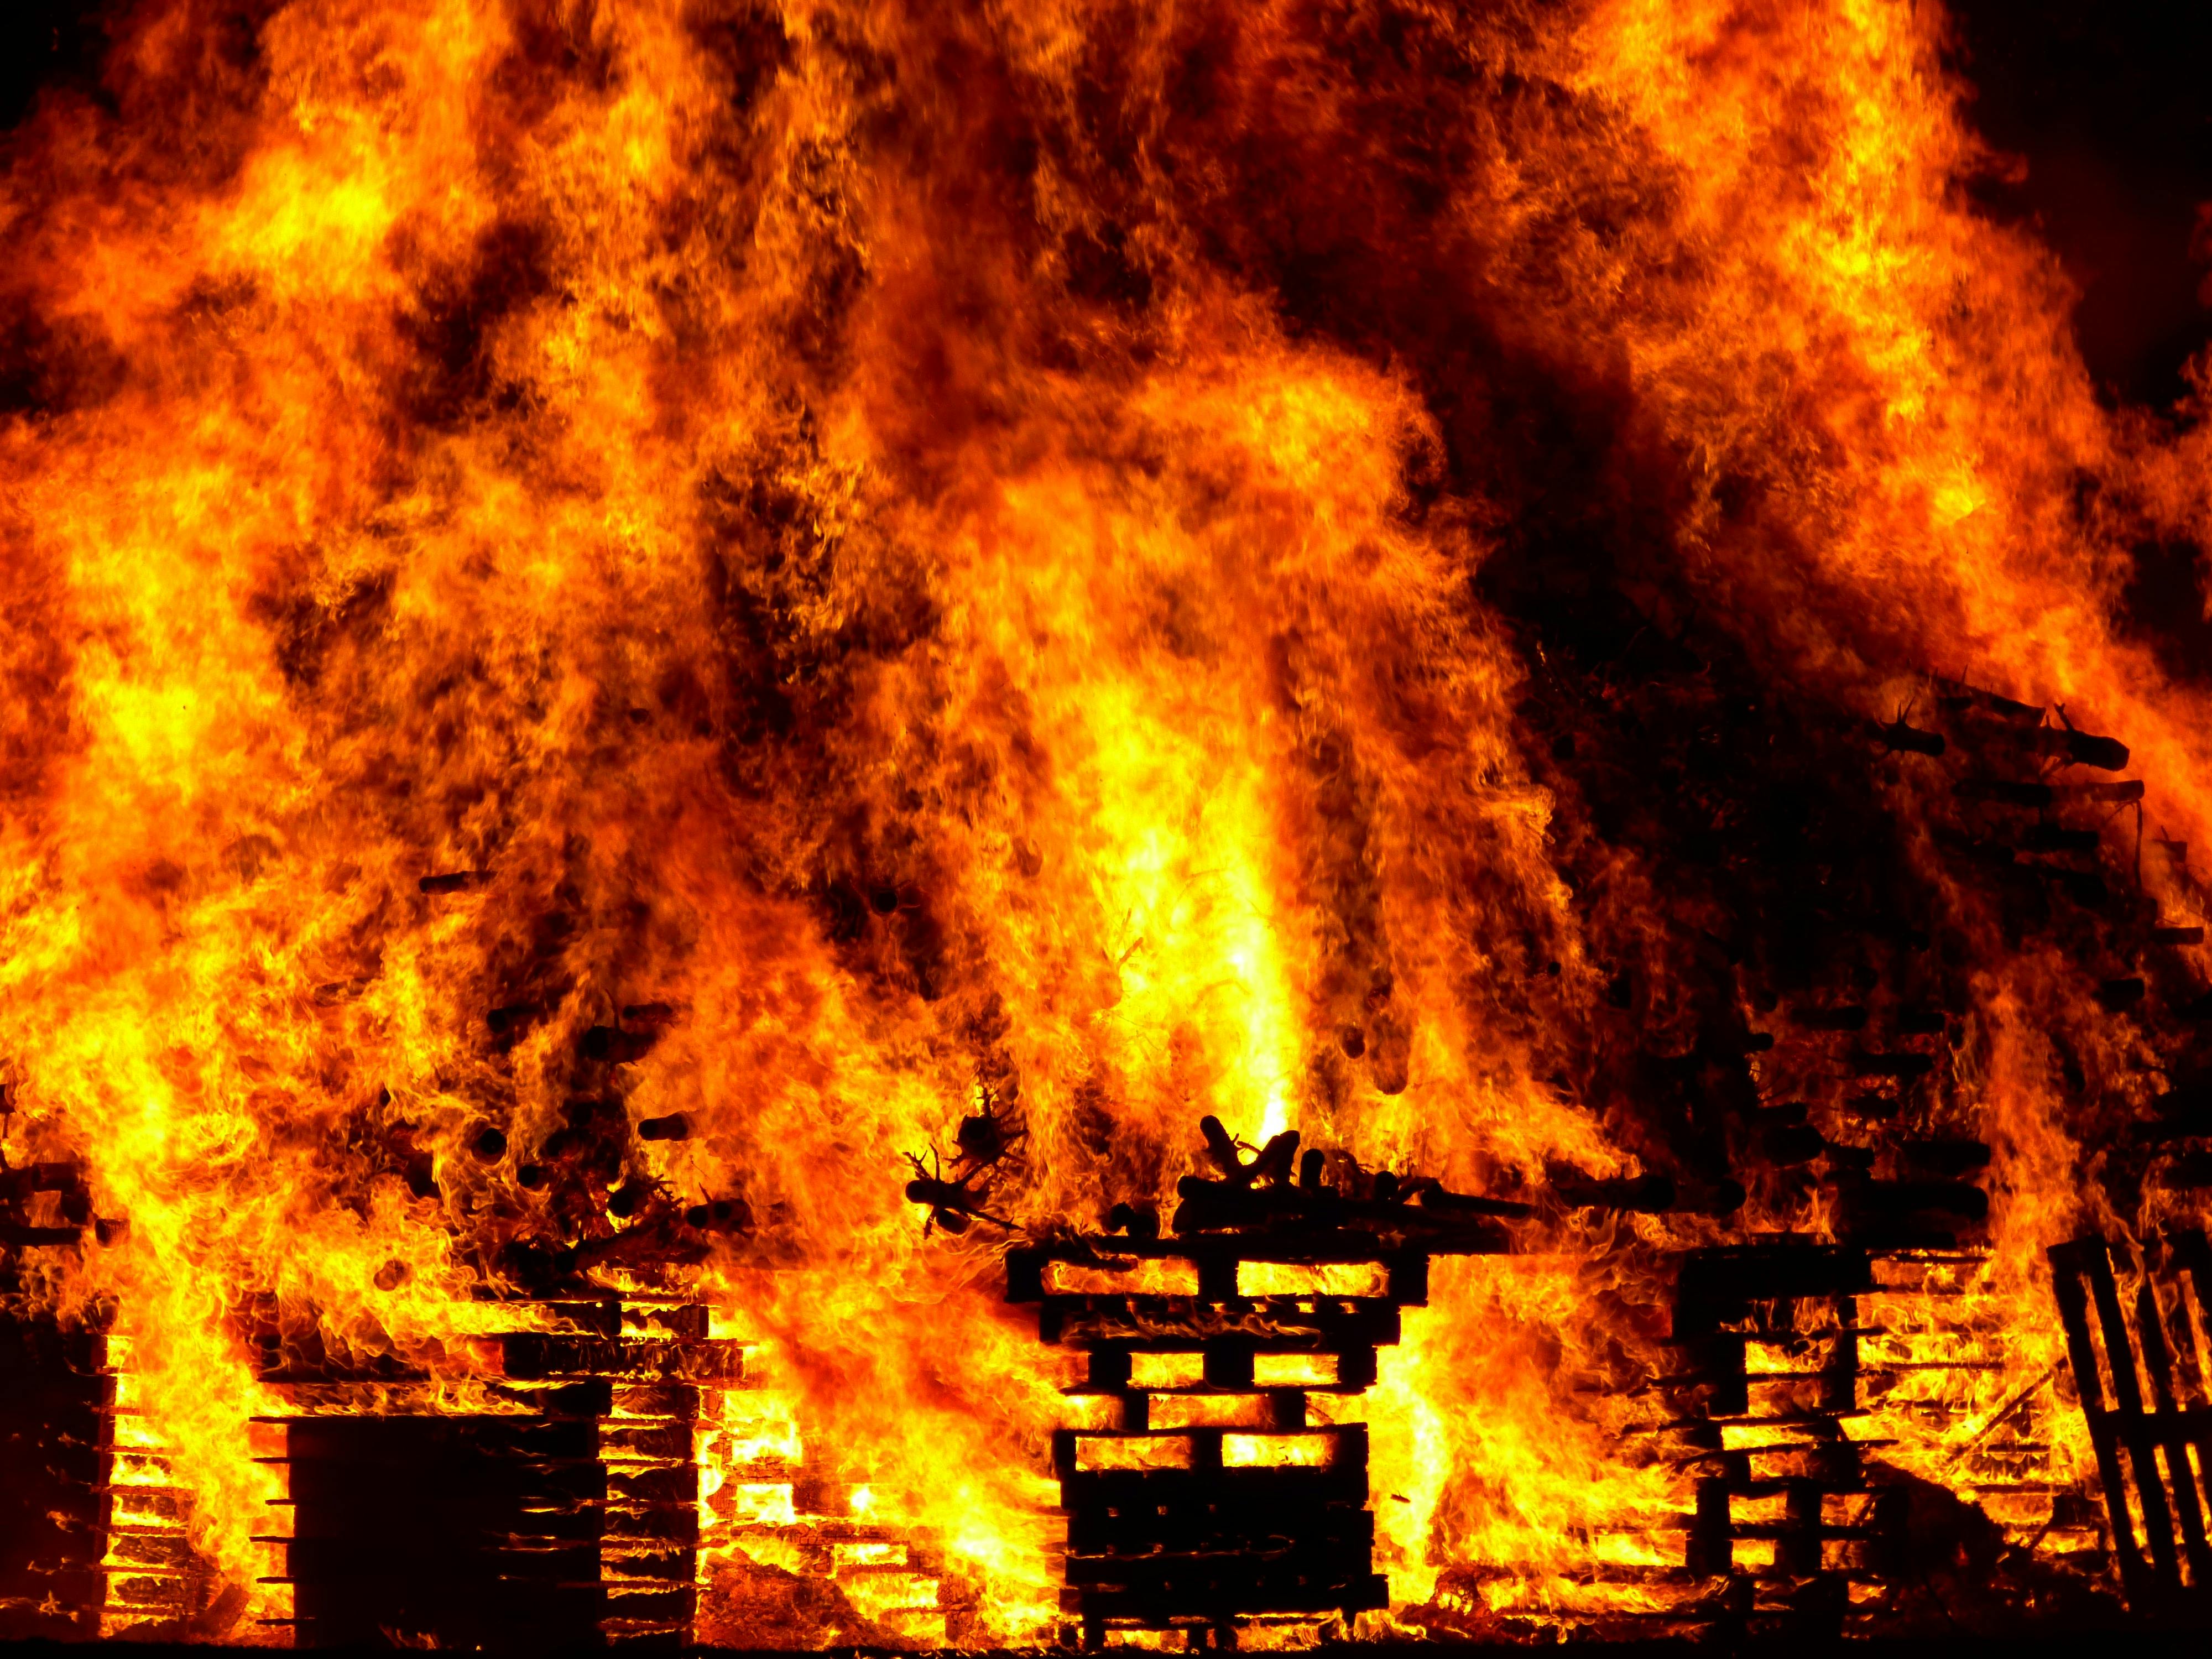 Une maison engloutie par les flammes. À des fins d'illustration uniquement | Source Pexels